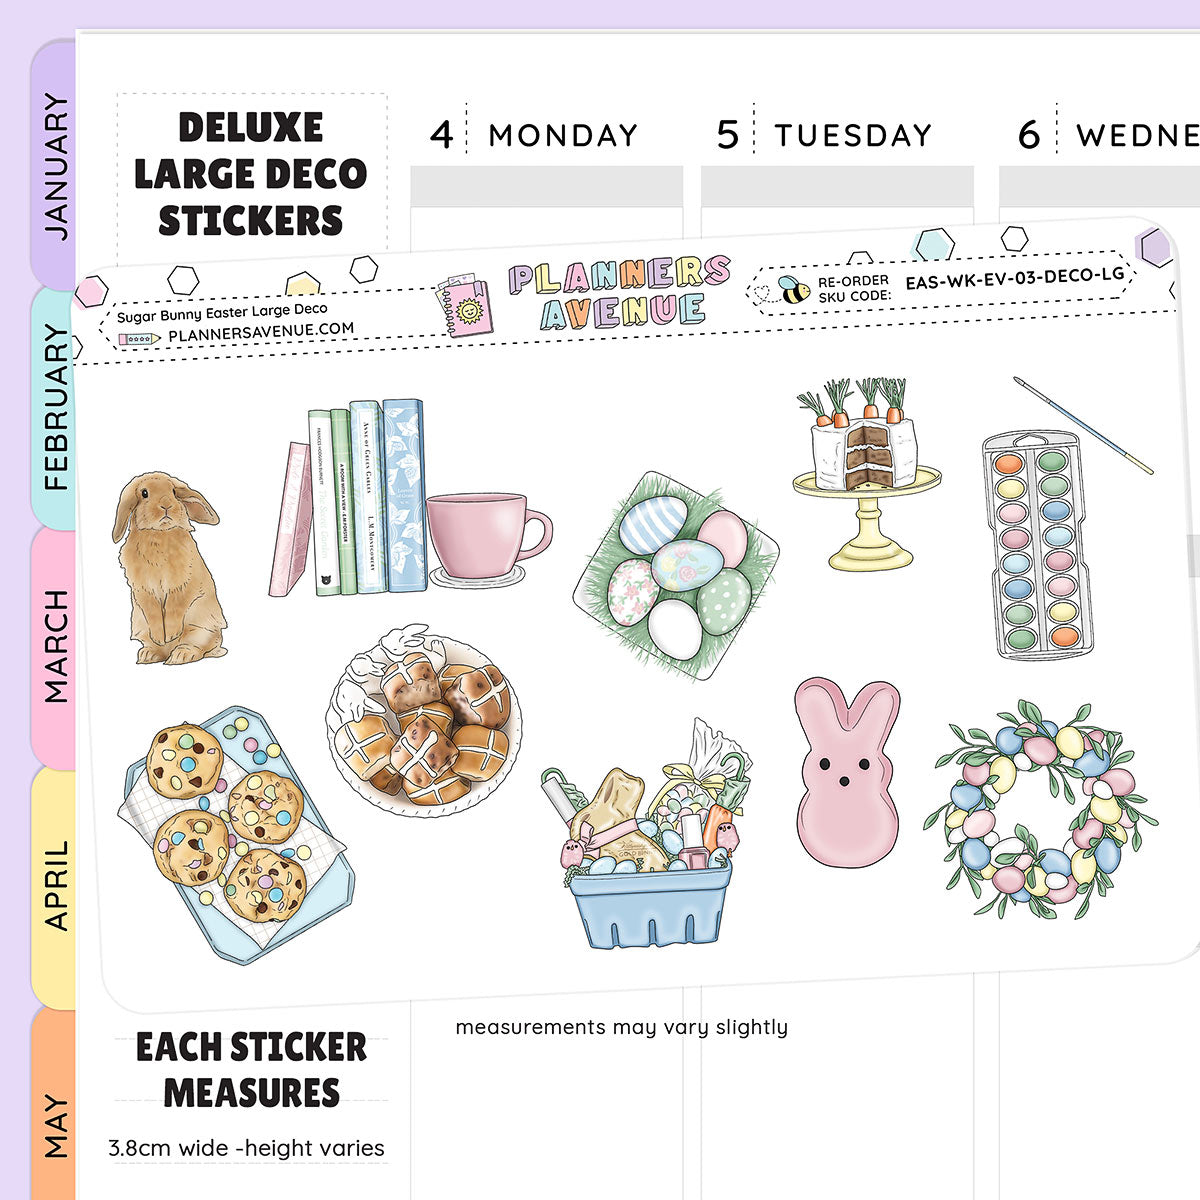 Sugar Bunny Deluxe Decorative Planner Sticker